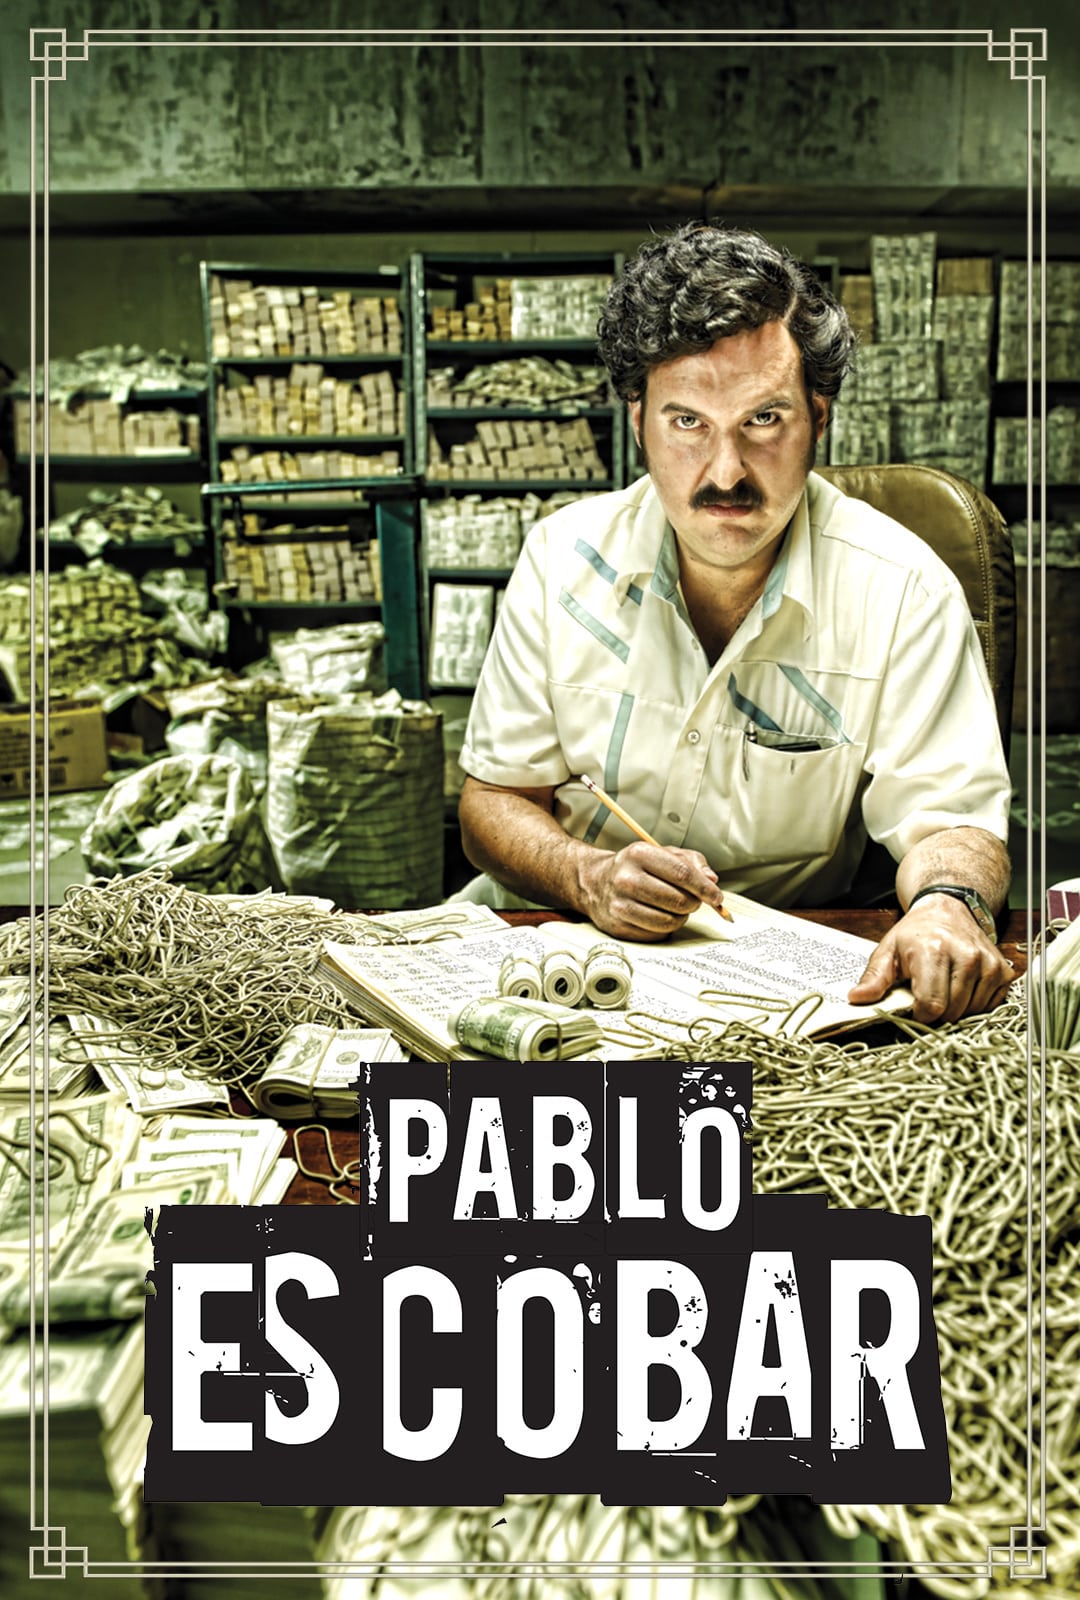 Pablo Escobar curiozitati ithot ro 2